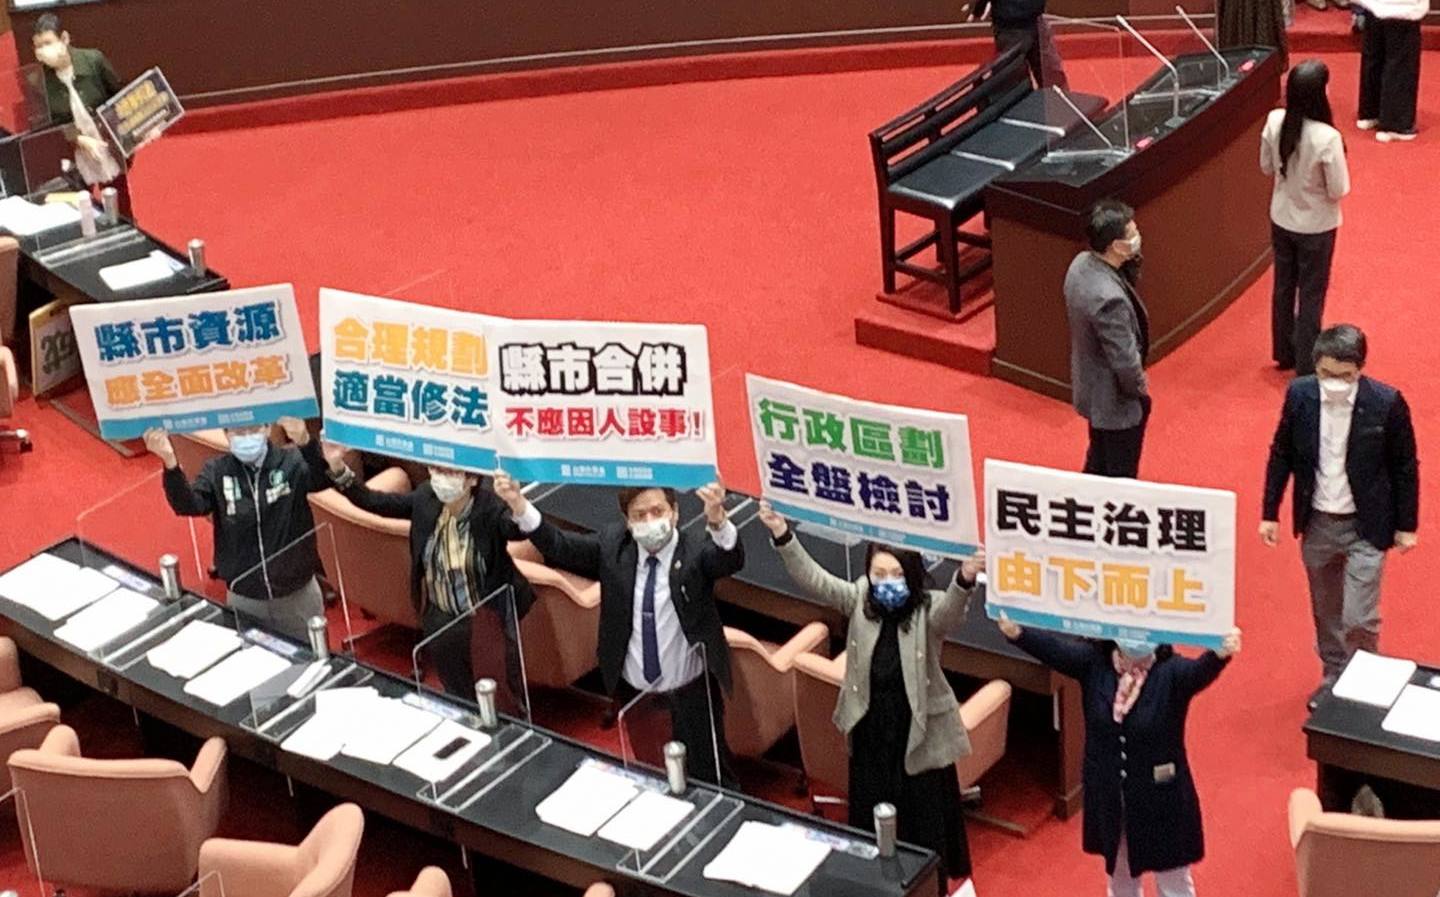 「公投後台灣產生的變化」 蔡壁如批：獨裁正在闖關民主 | 政治 | Ne